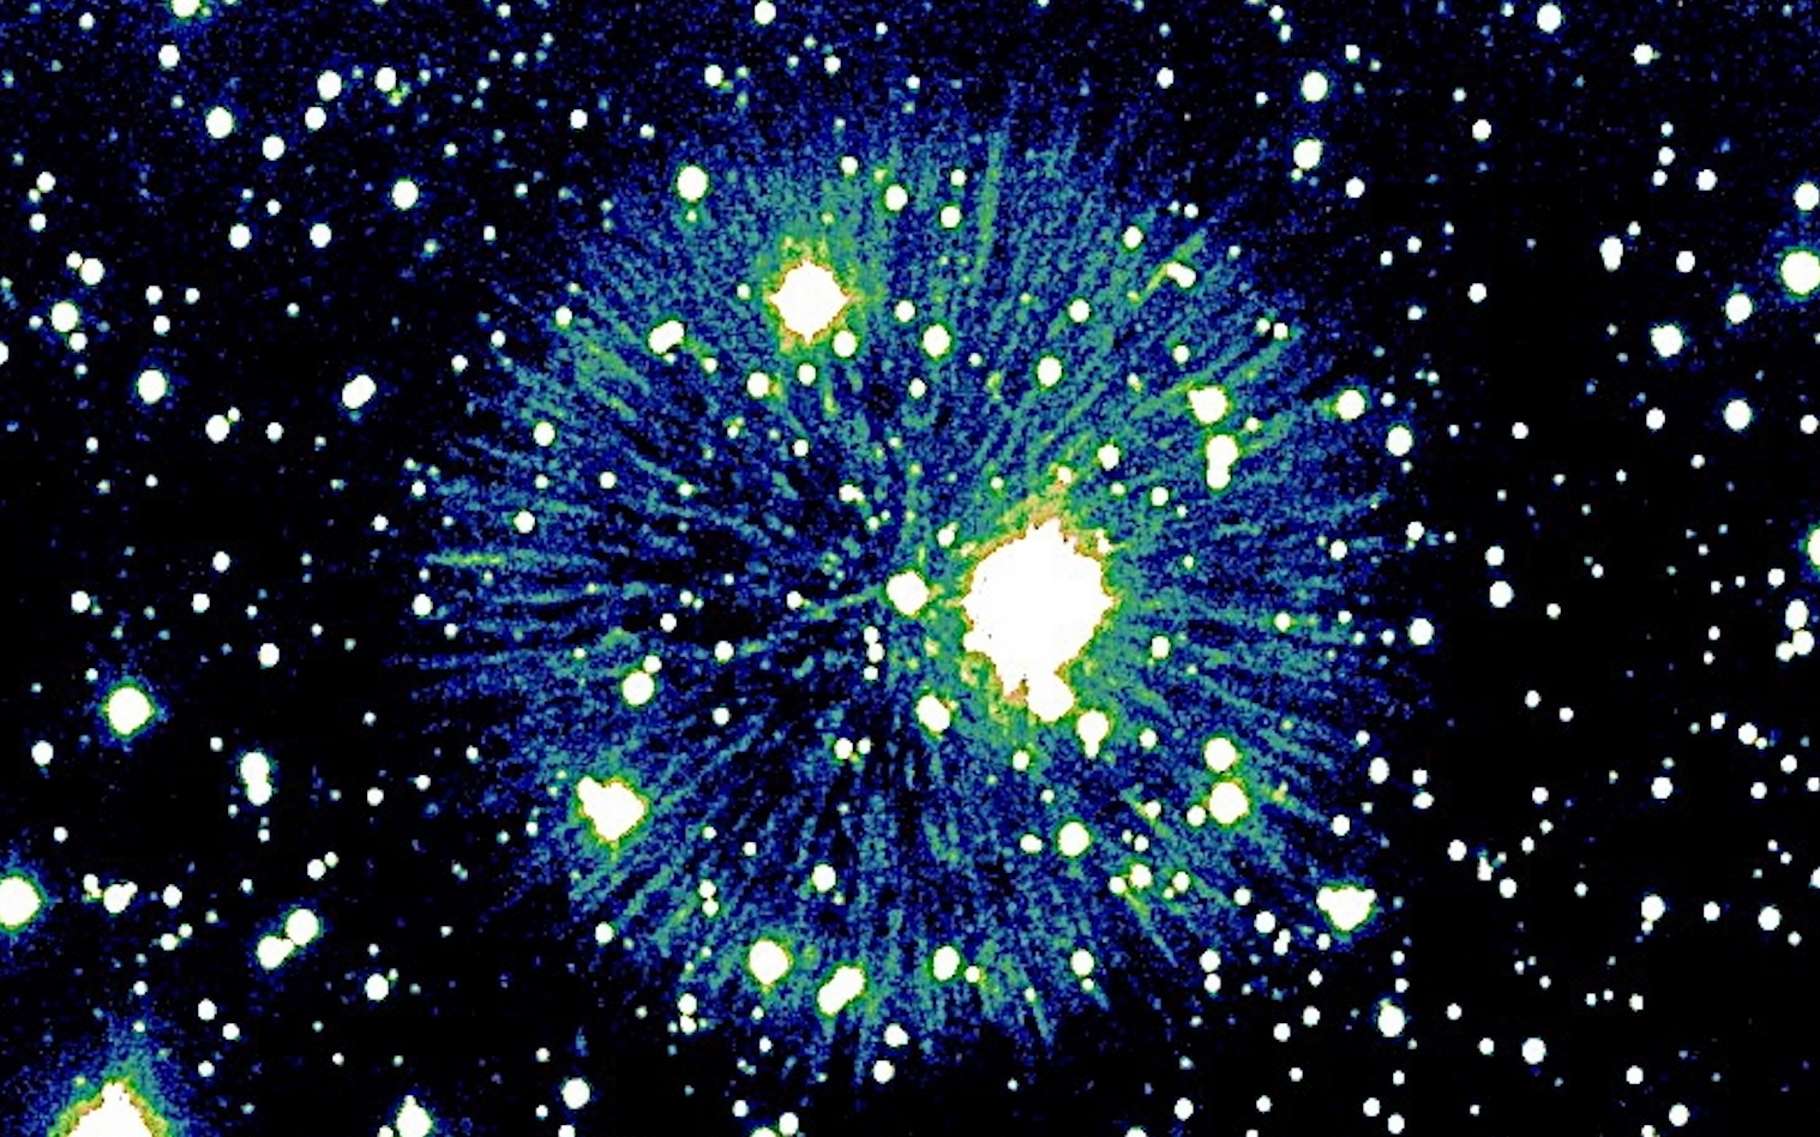 Fin du mystère pour cette supernova apparue il y a 850 ans